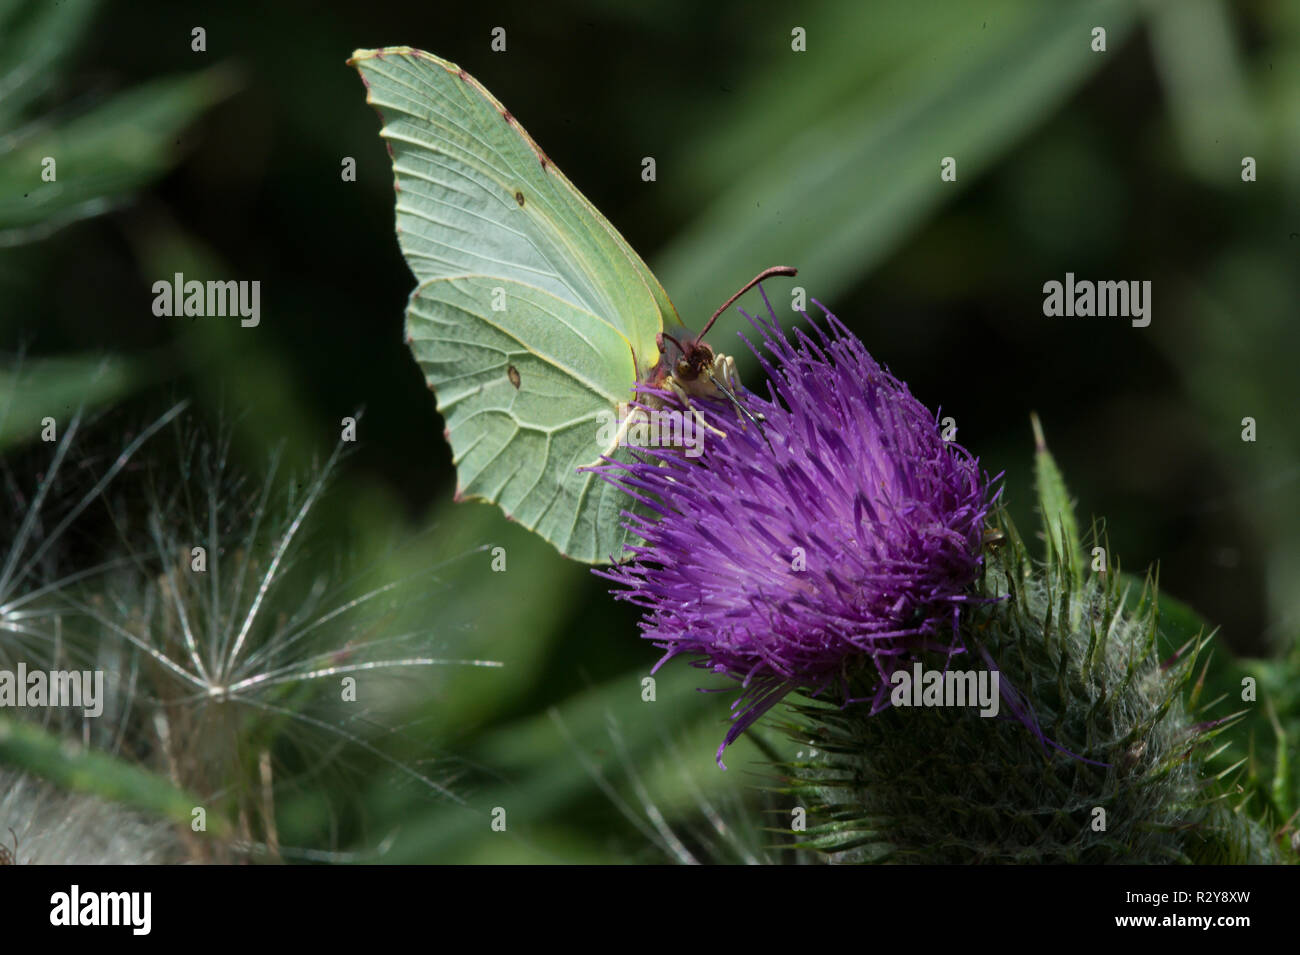 Brimstone butterfly, Rutland acqua Foto Stock